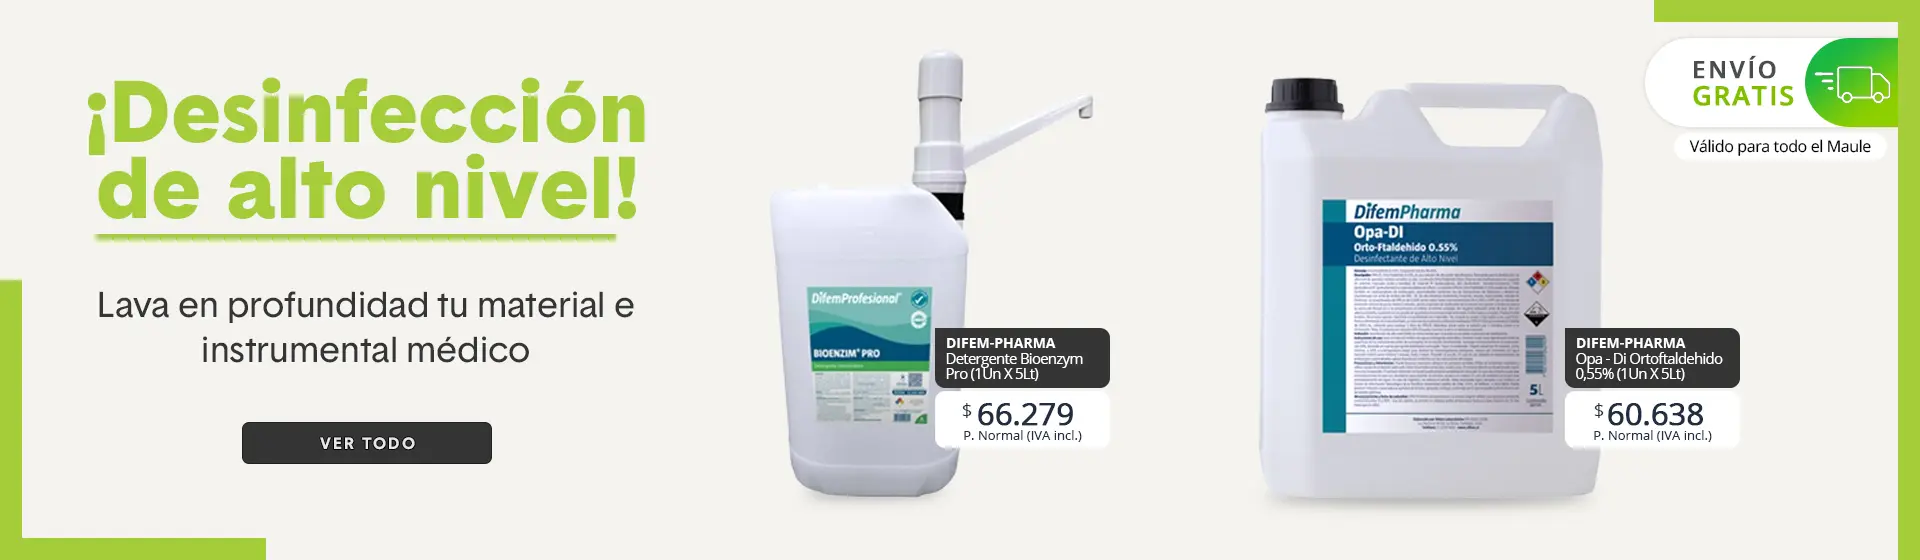 Difem-pharma-Químicos-De-Limpieza-Desinfectantes-por-mayor-talca-santiago-chile-1